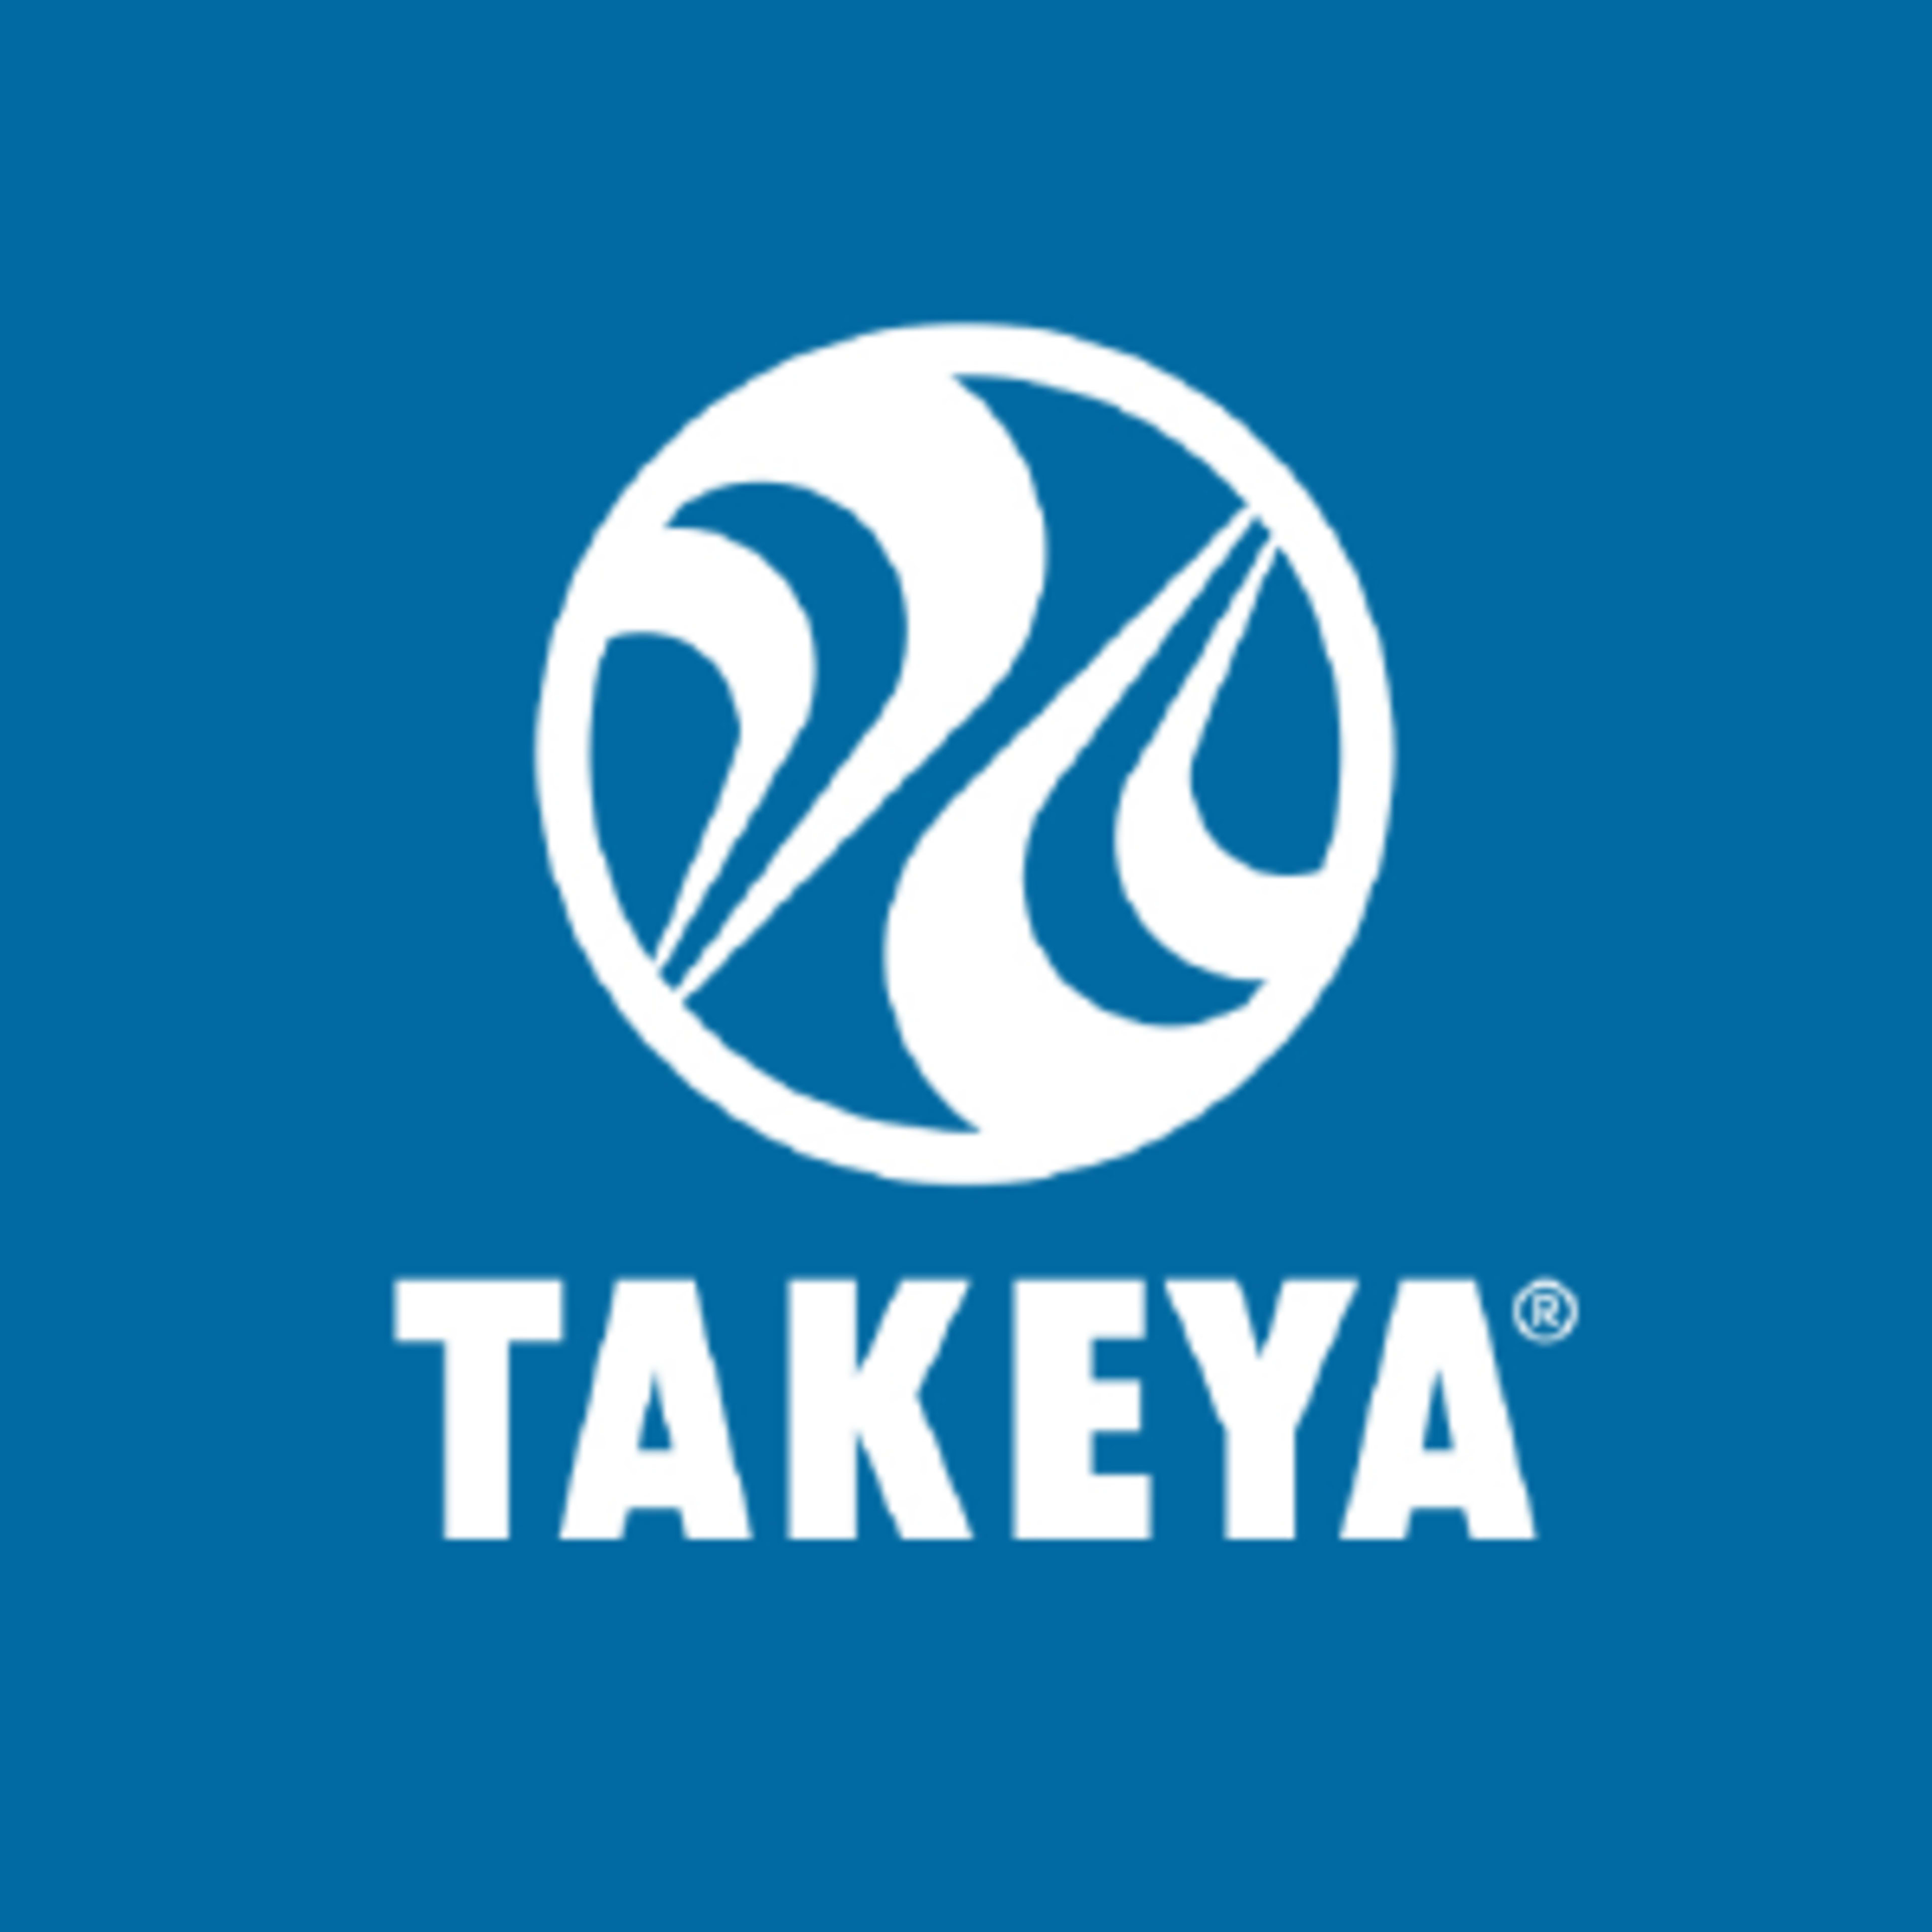 TakeyaCode